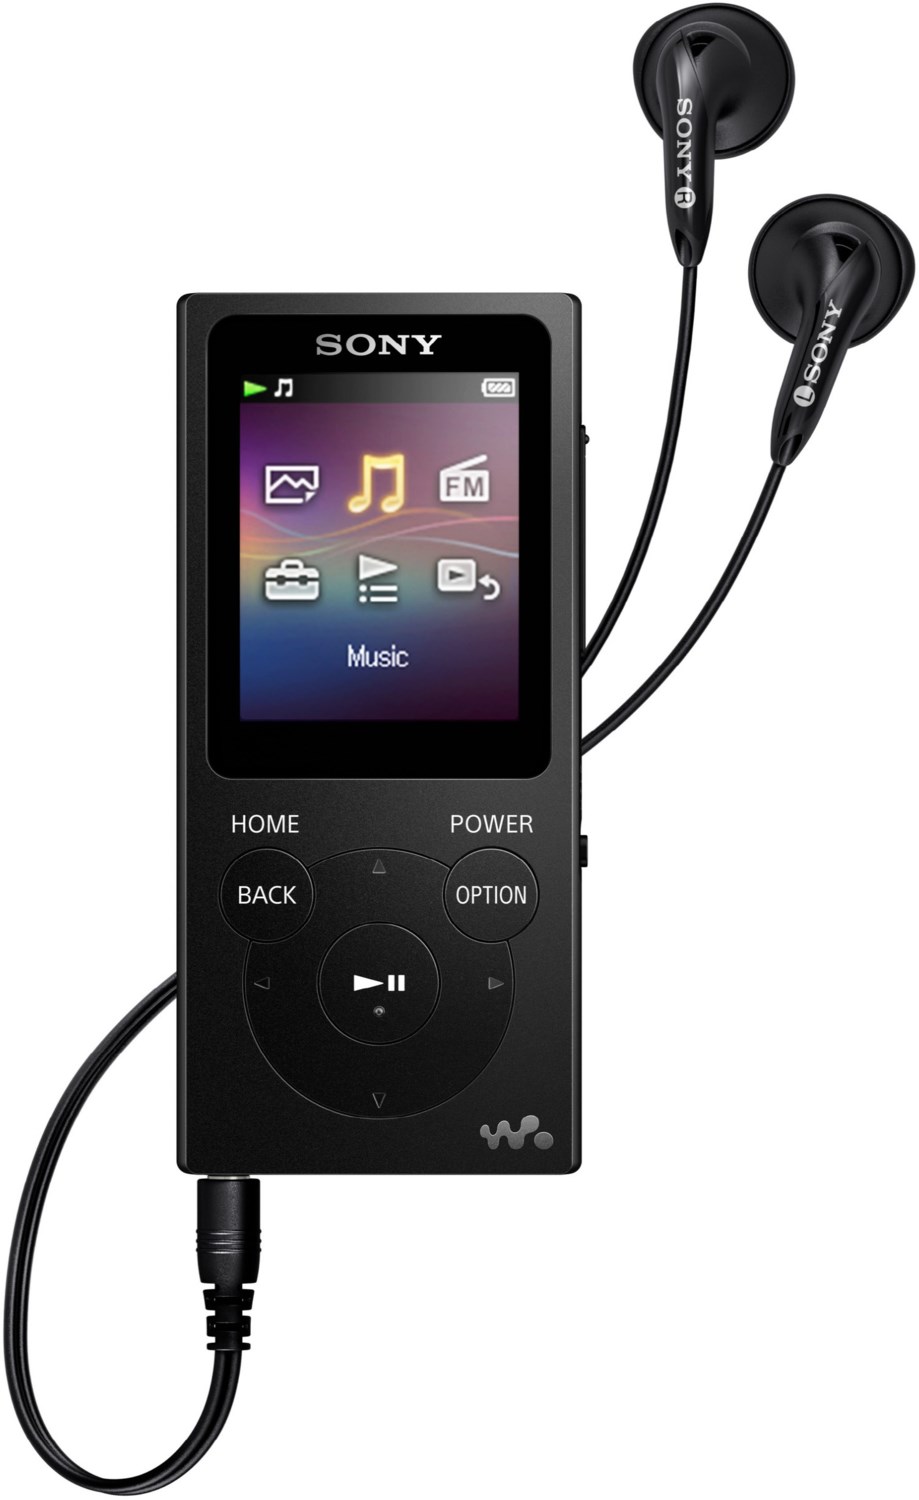 NWZ-E394B (8GB) tragbarer Multimedia-Player schwarz